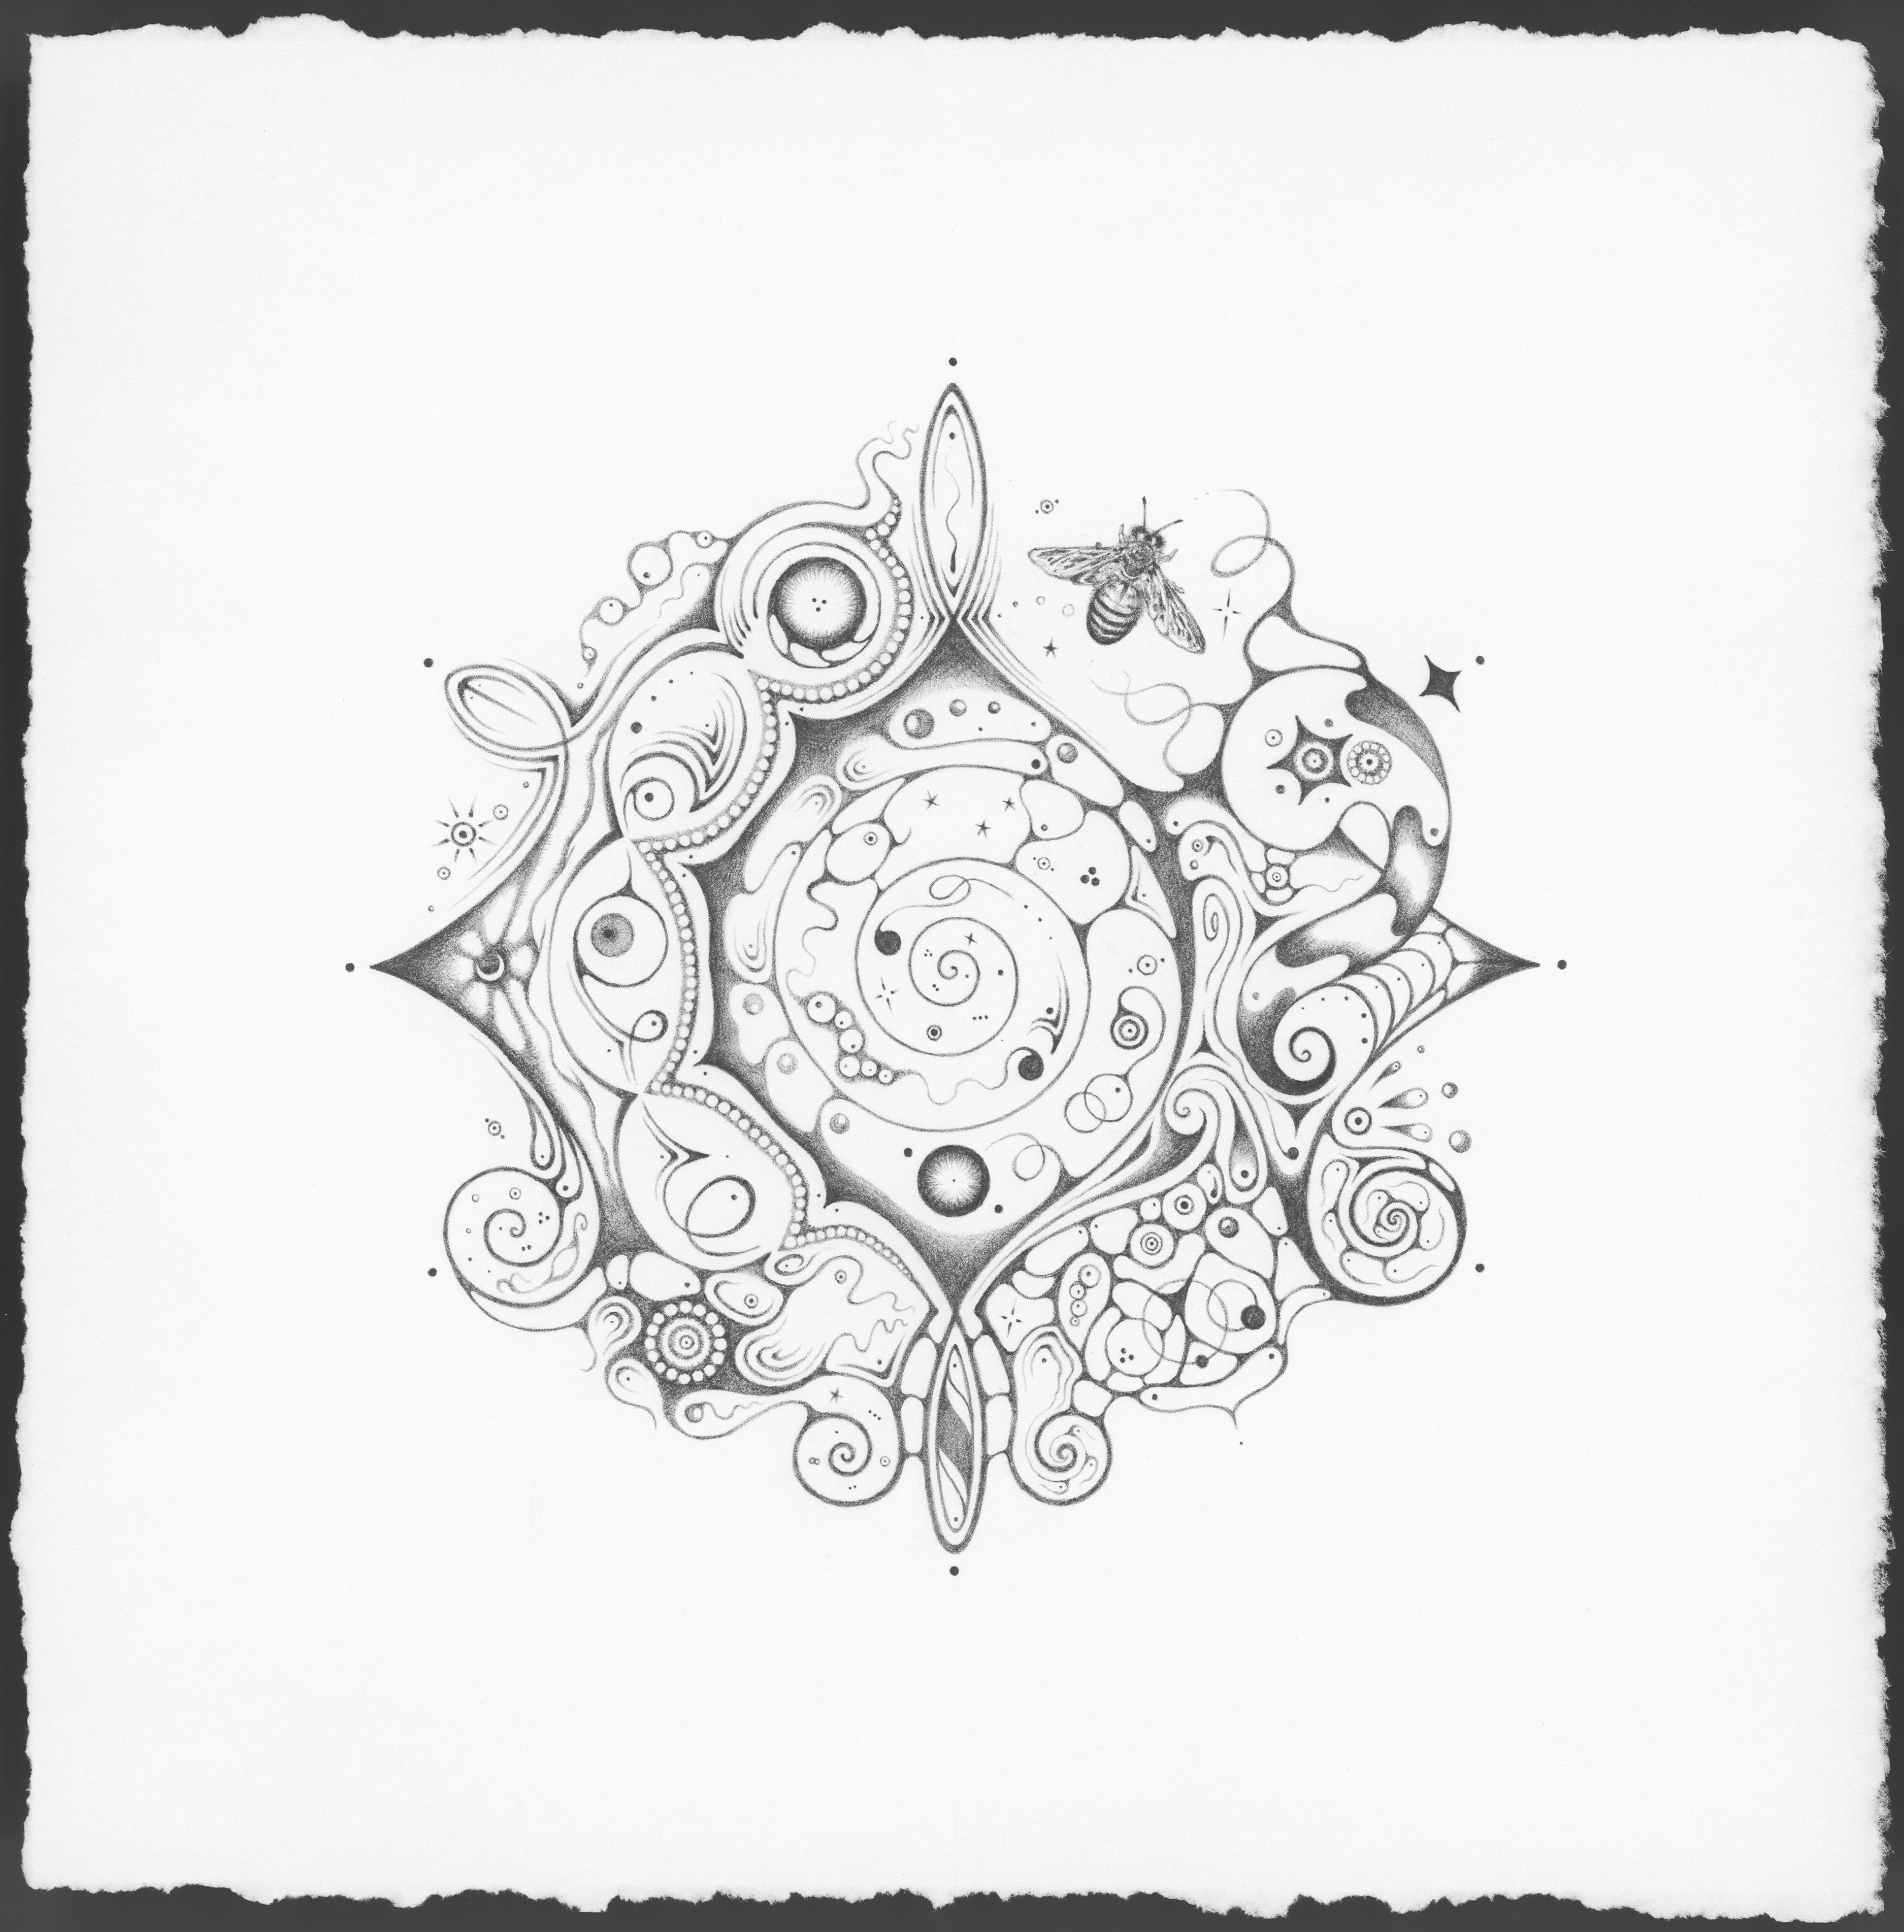 Michiyo Ihara Abstract Drawing - Snowflakes 140 Cosmopolitan, Mandala Pencil Drawing, Crescent Moon, Bumble Bee